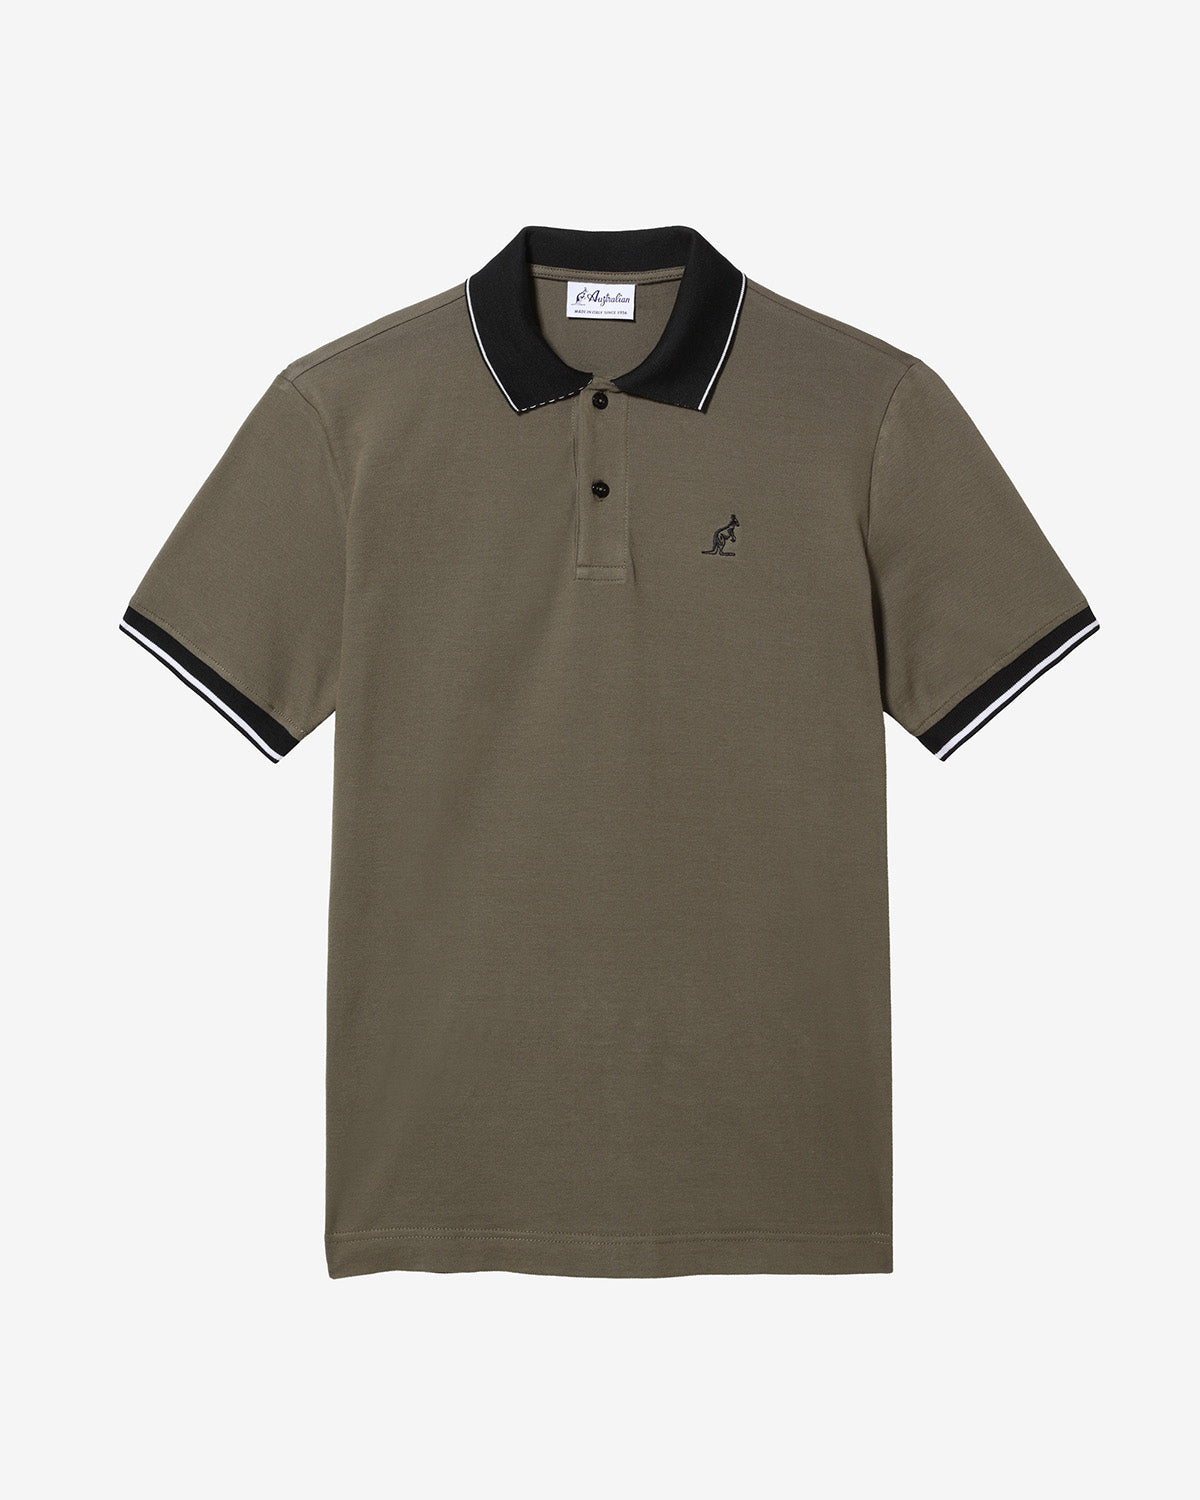 Lines Polo Shirt: Australian Sportswear